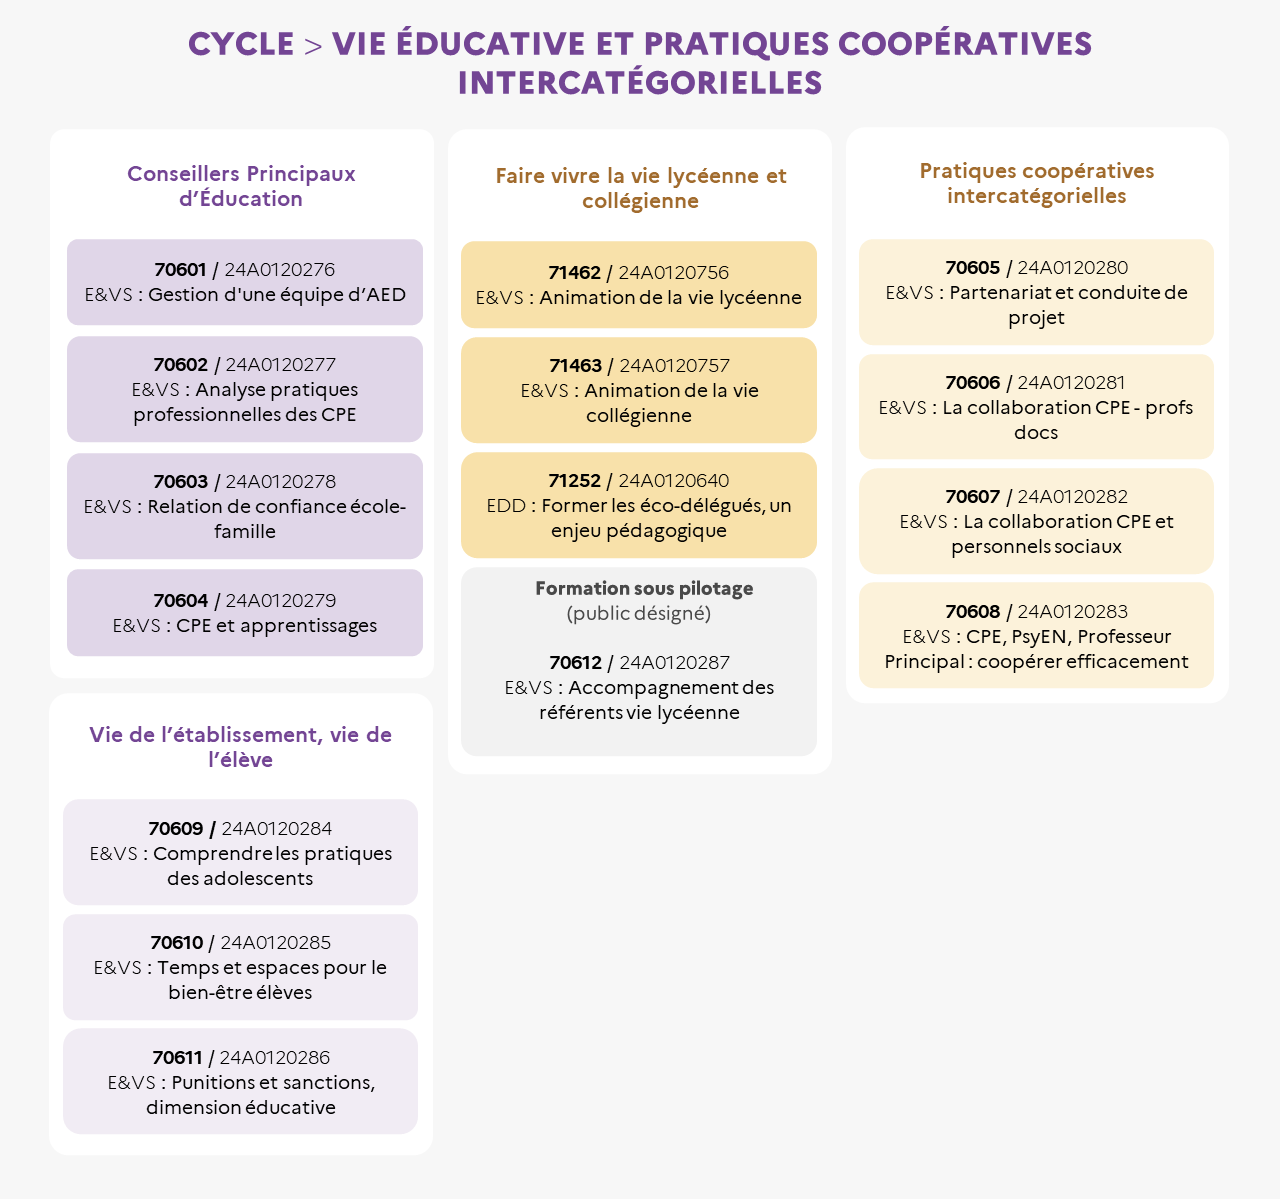 EAFC - Infographie cycle Vie éducative et pratiques coopératives intercatégorielles